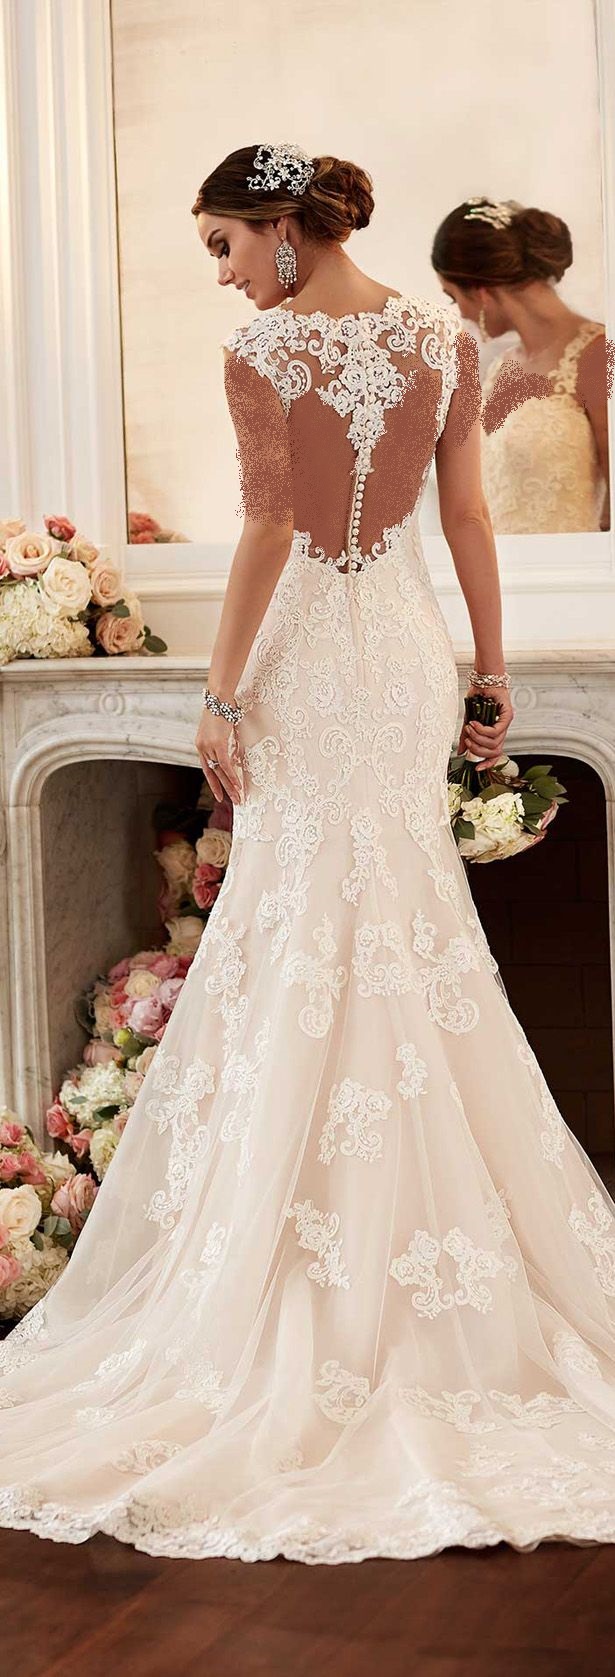 ,مدل لباس عروس دانتل دار,لباس عروس,جدیدترین مدل لباس عروس,[categoriy]